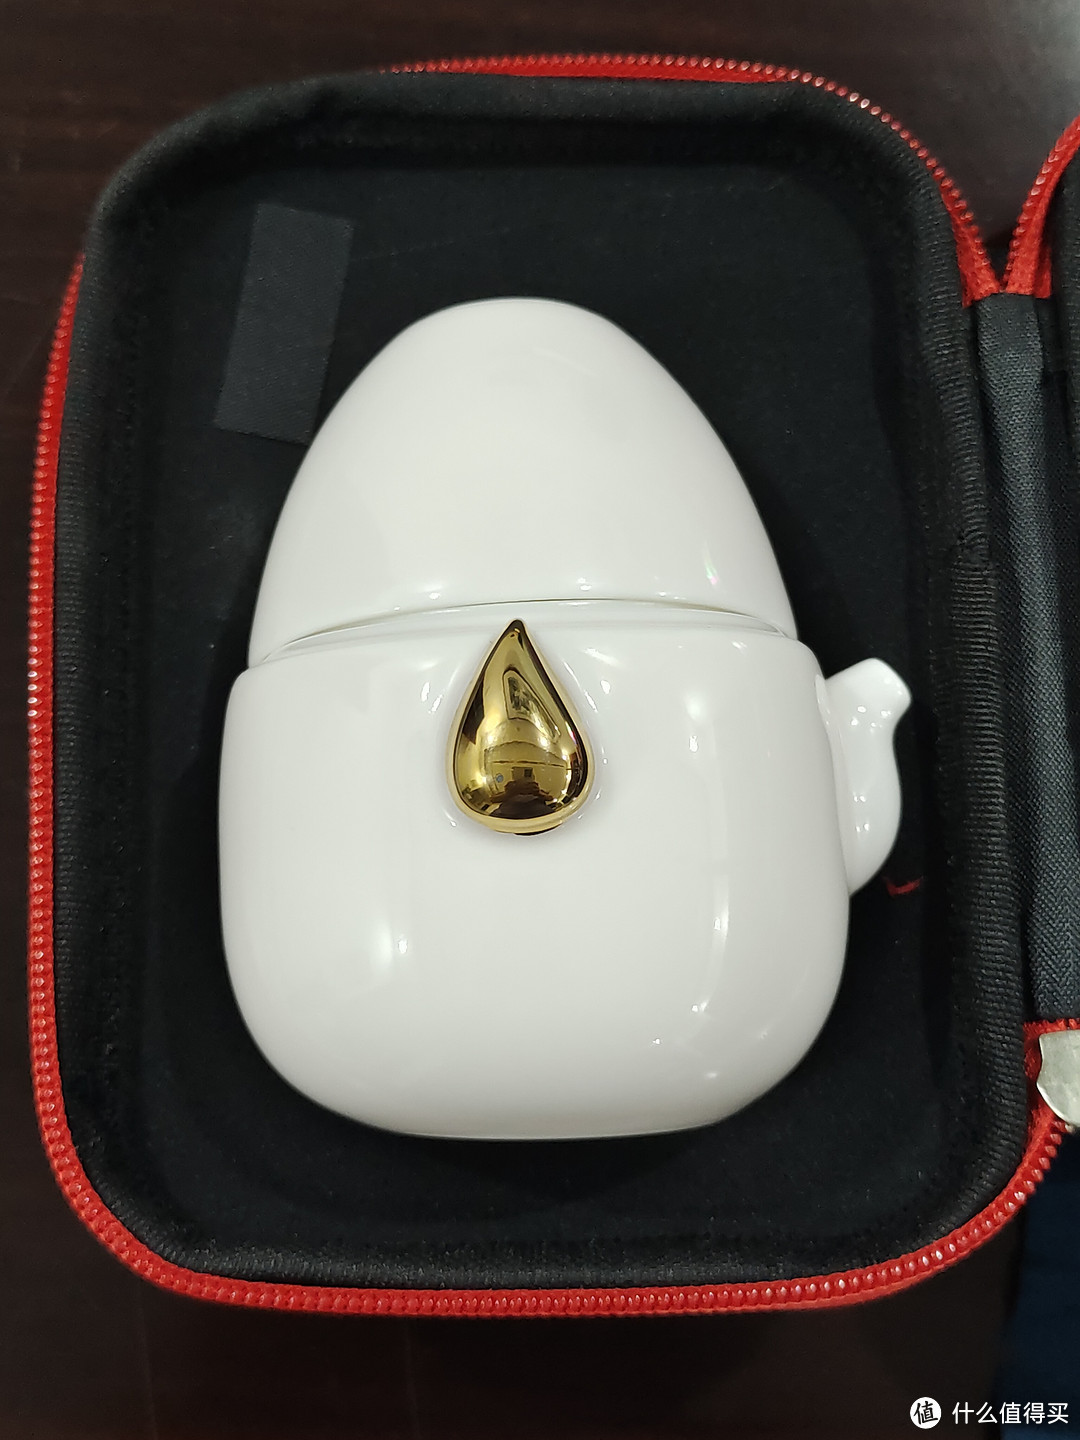 水滴快客杯旅行茶具测评和体验：一壶两杯便携式套装行走旅途的装备